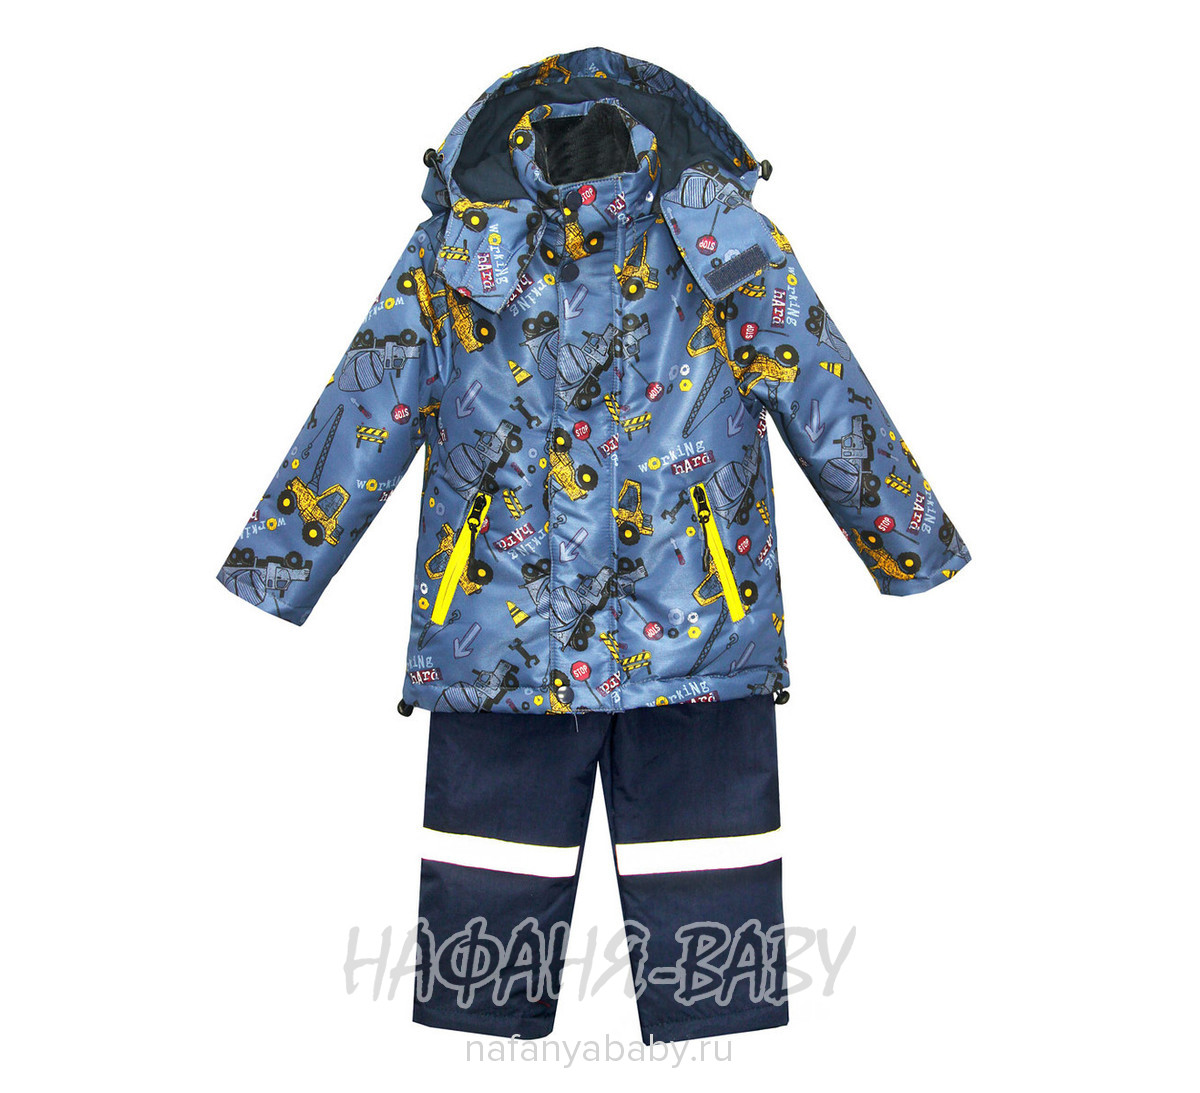 Детский демисезонный костюм BOTCHKOVA, купить в интернет магазине Нафаня. арт: 883.